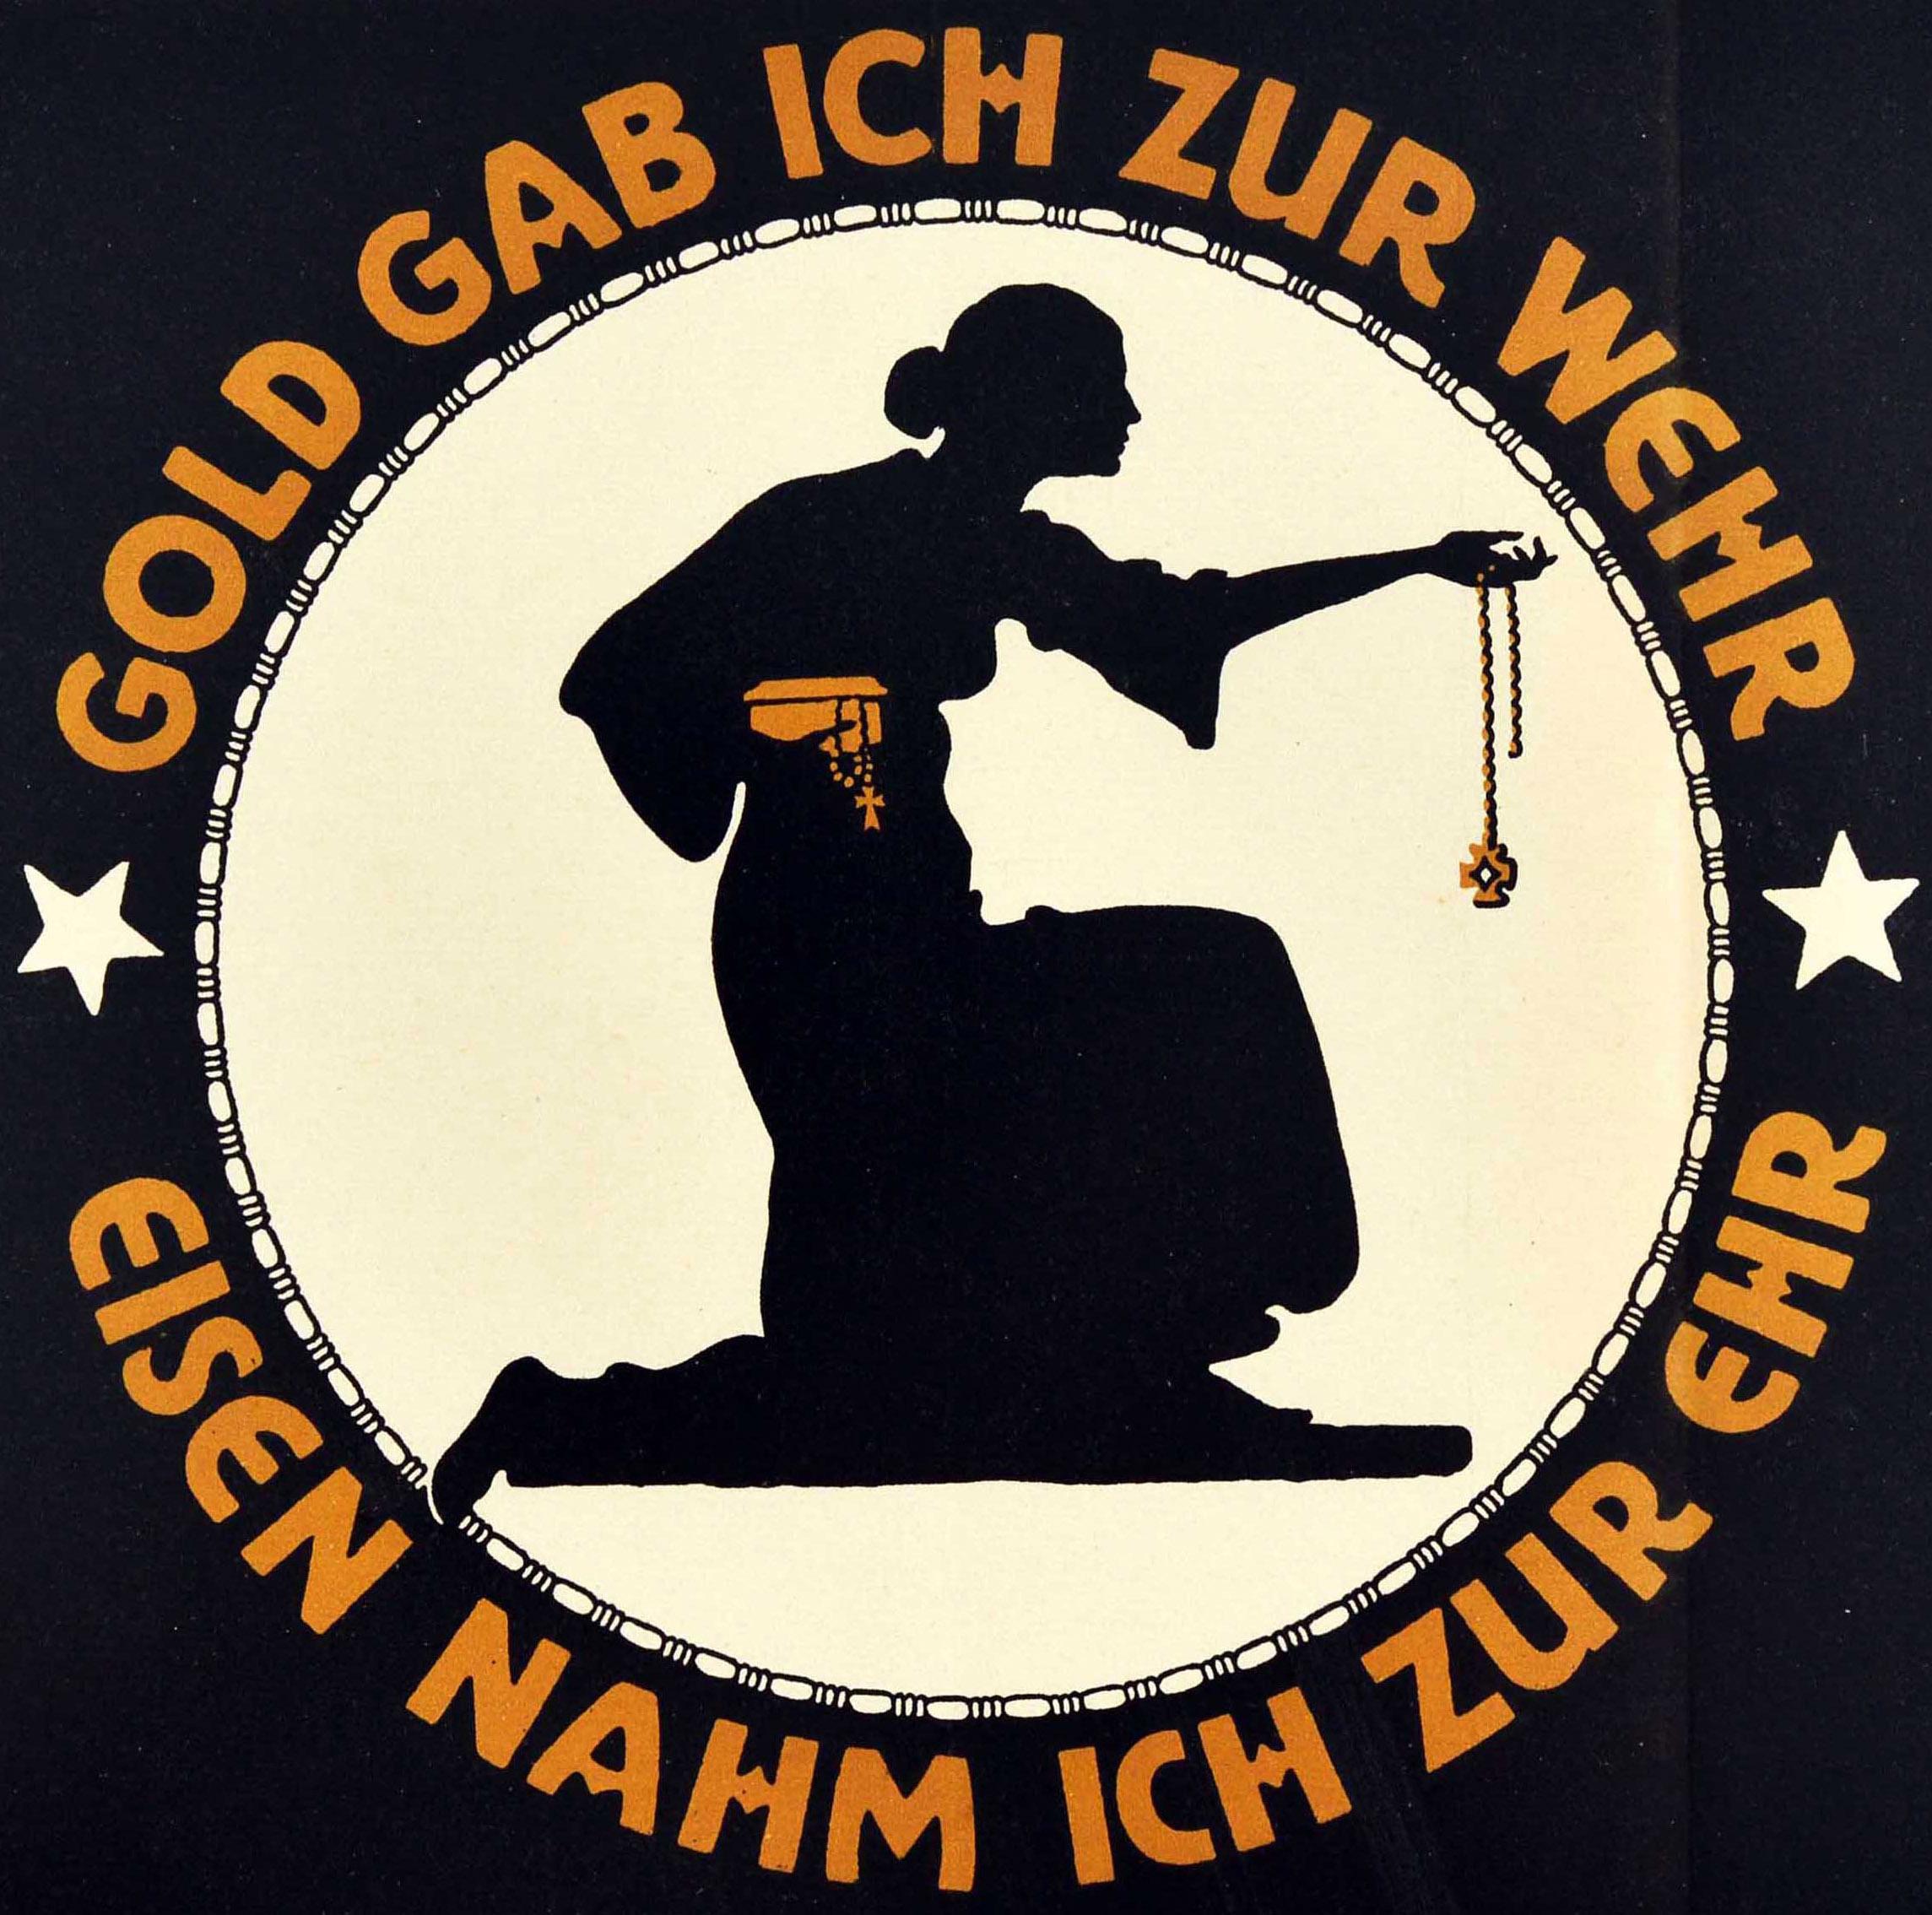 Original antikes Plakat aus dem Ersten Weltkrieg - Ich gab Gold zur Verteidigung Eisen nahm ich zur Ehre / Gold gab ich zur Wehr Eisen nahm ich zur ehr / Bringt euren Goldschmuck zu den Goldauktionen! Stilvolles Kunstwerk des deutschen Malers und